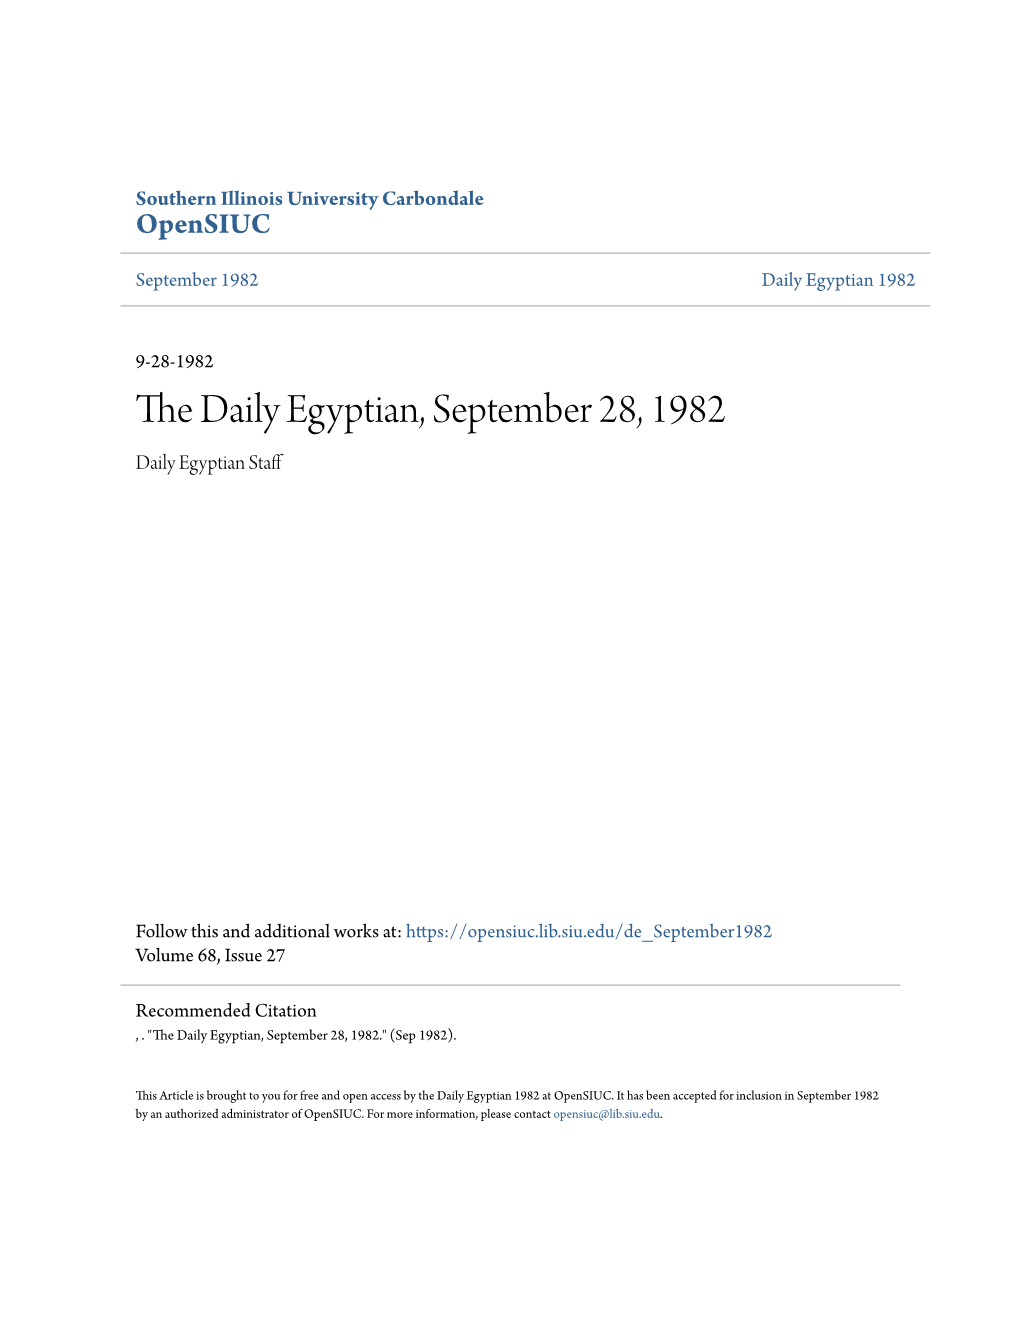 The Daily Egyptian, September 28, 1982